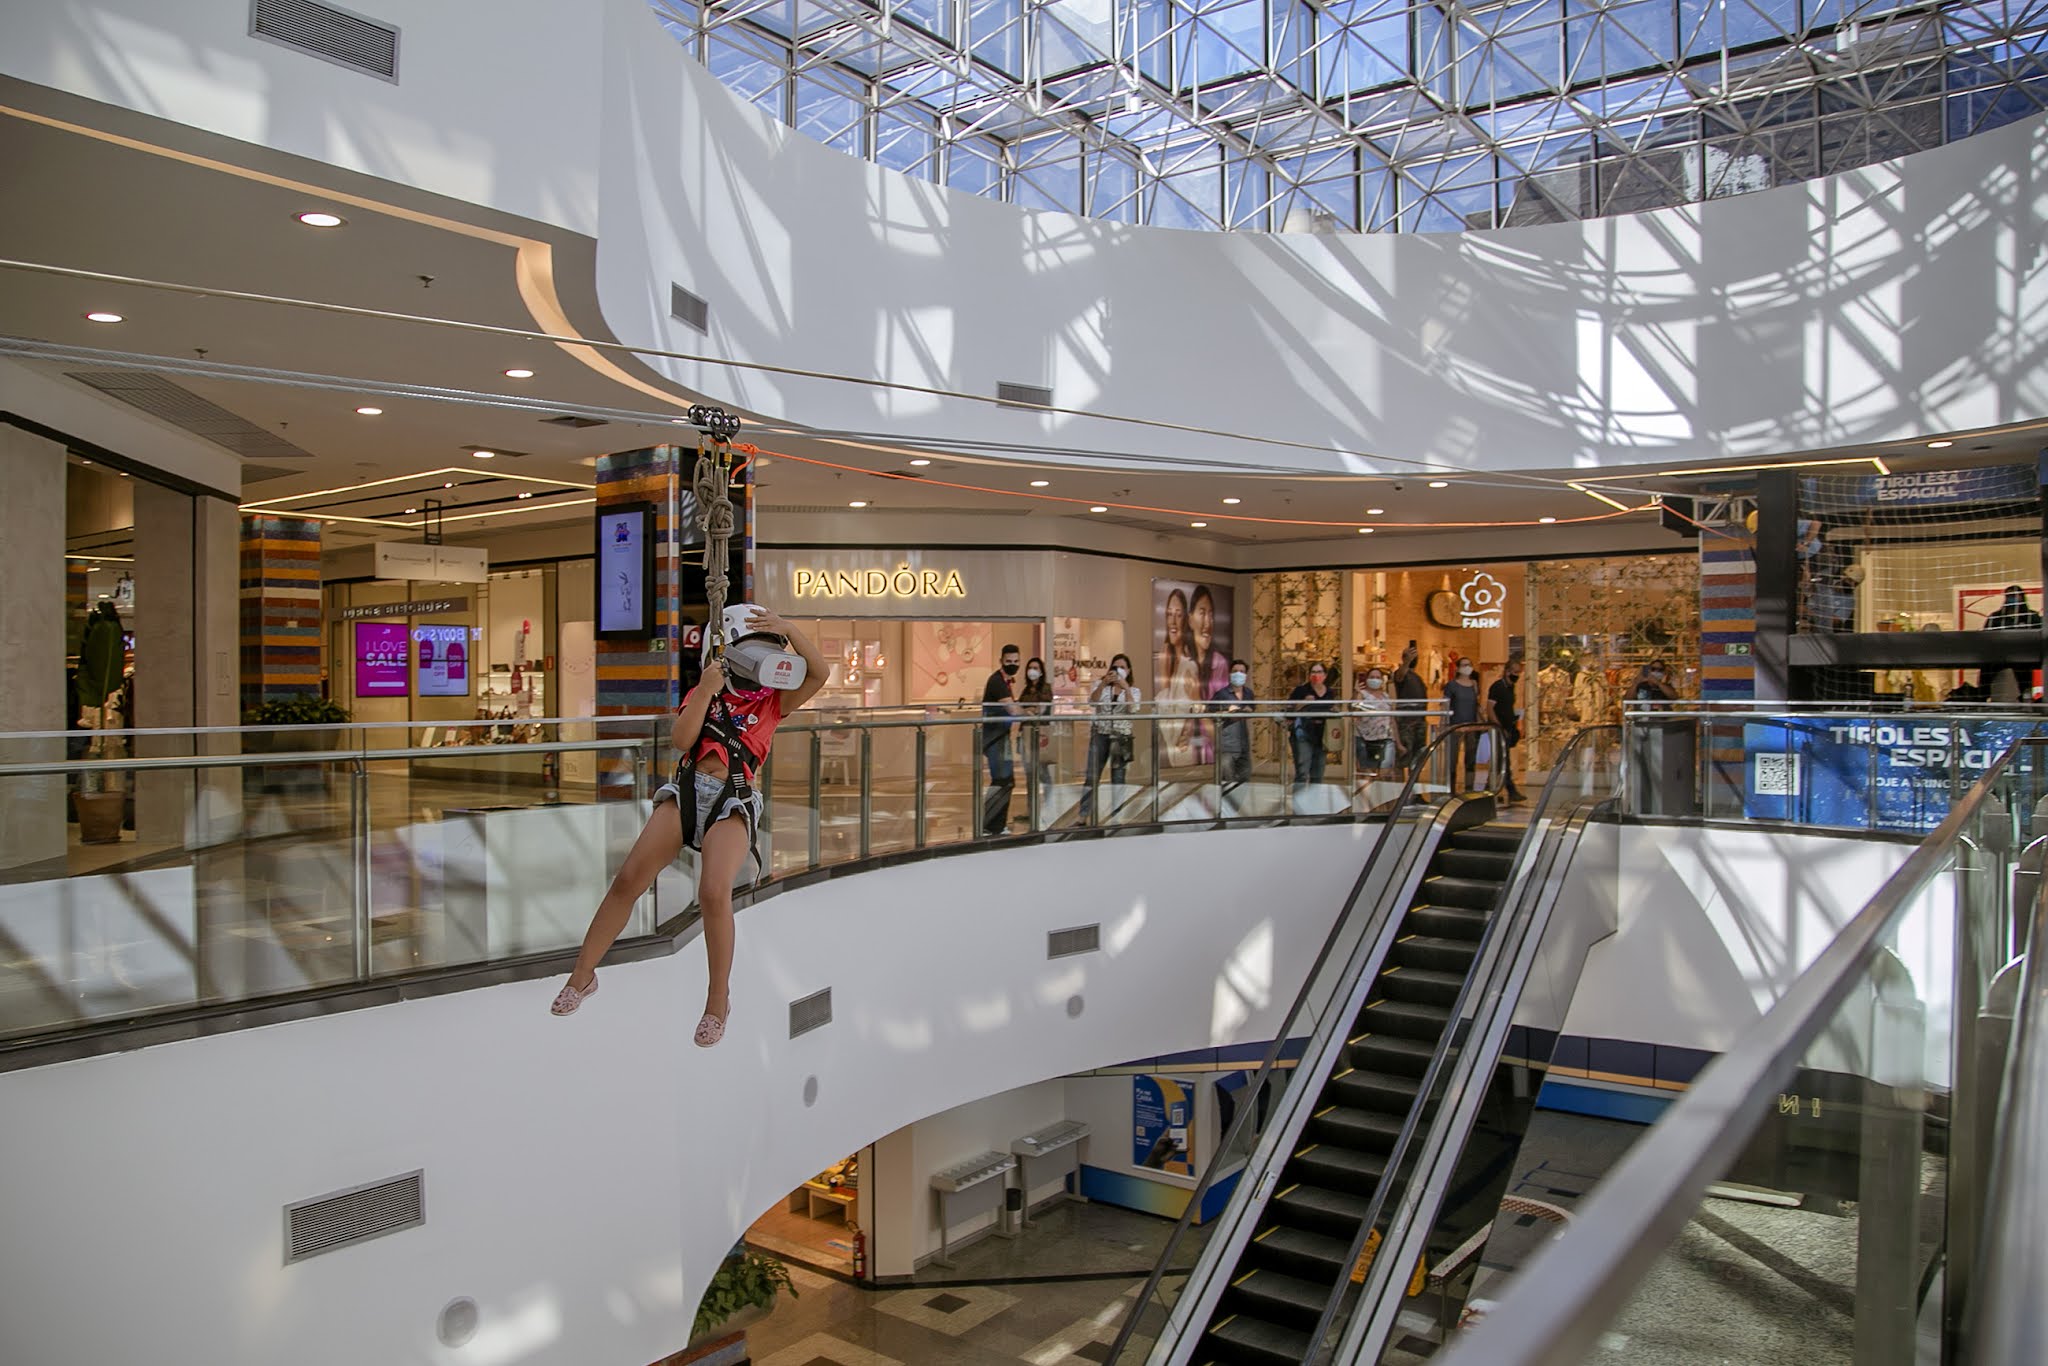 Aventura no alto: Brasília Shopping promove ação de férias com tirolesa